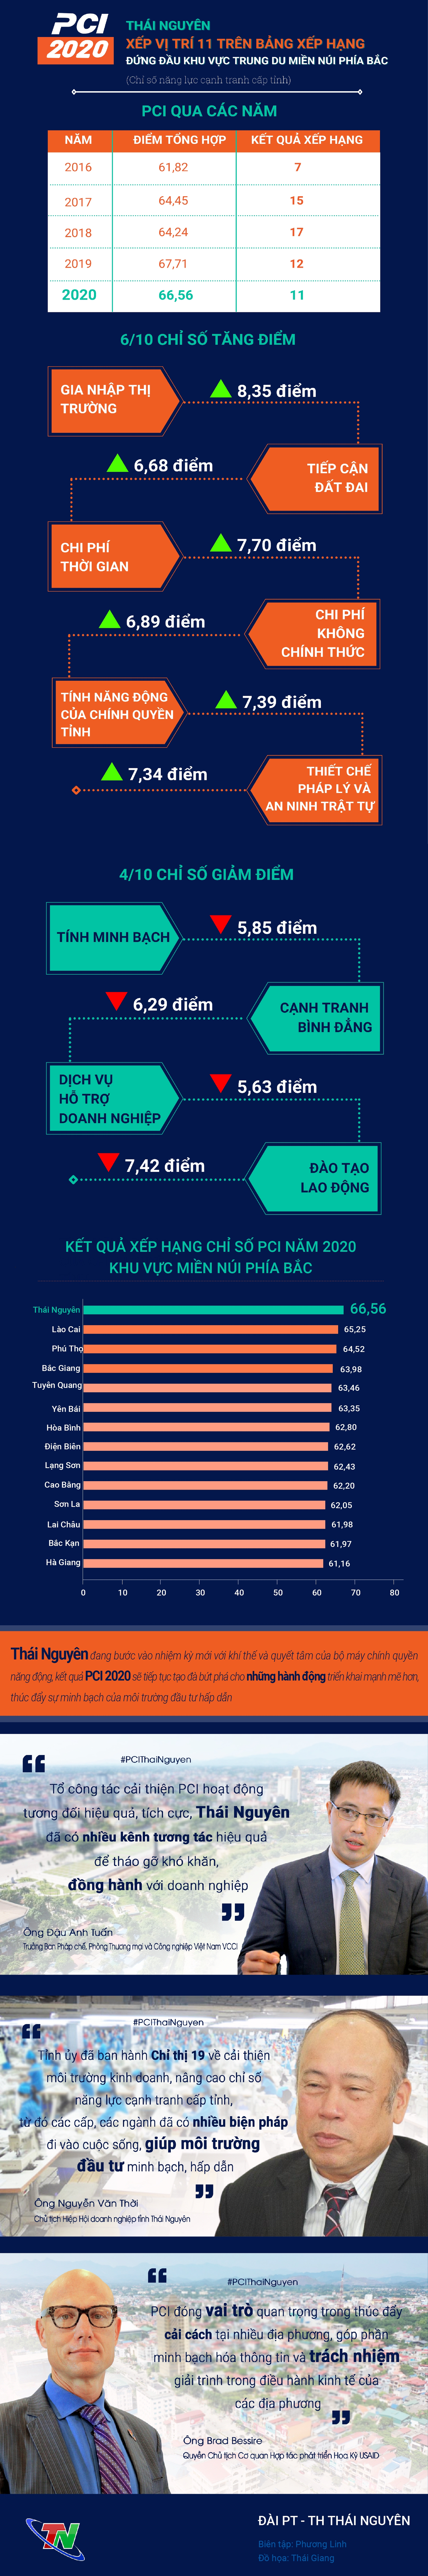 [Infographics] Chỉ số PCI 2020: Thái Nguyên đứng đầu khu vực trung du miền núi phía Bắc